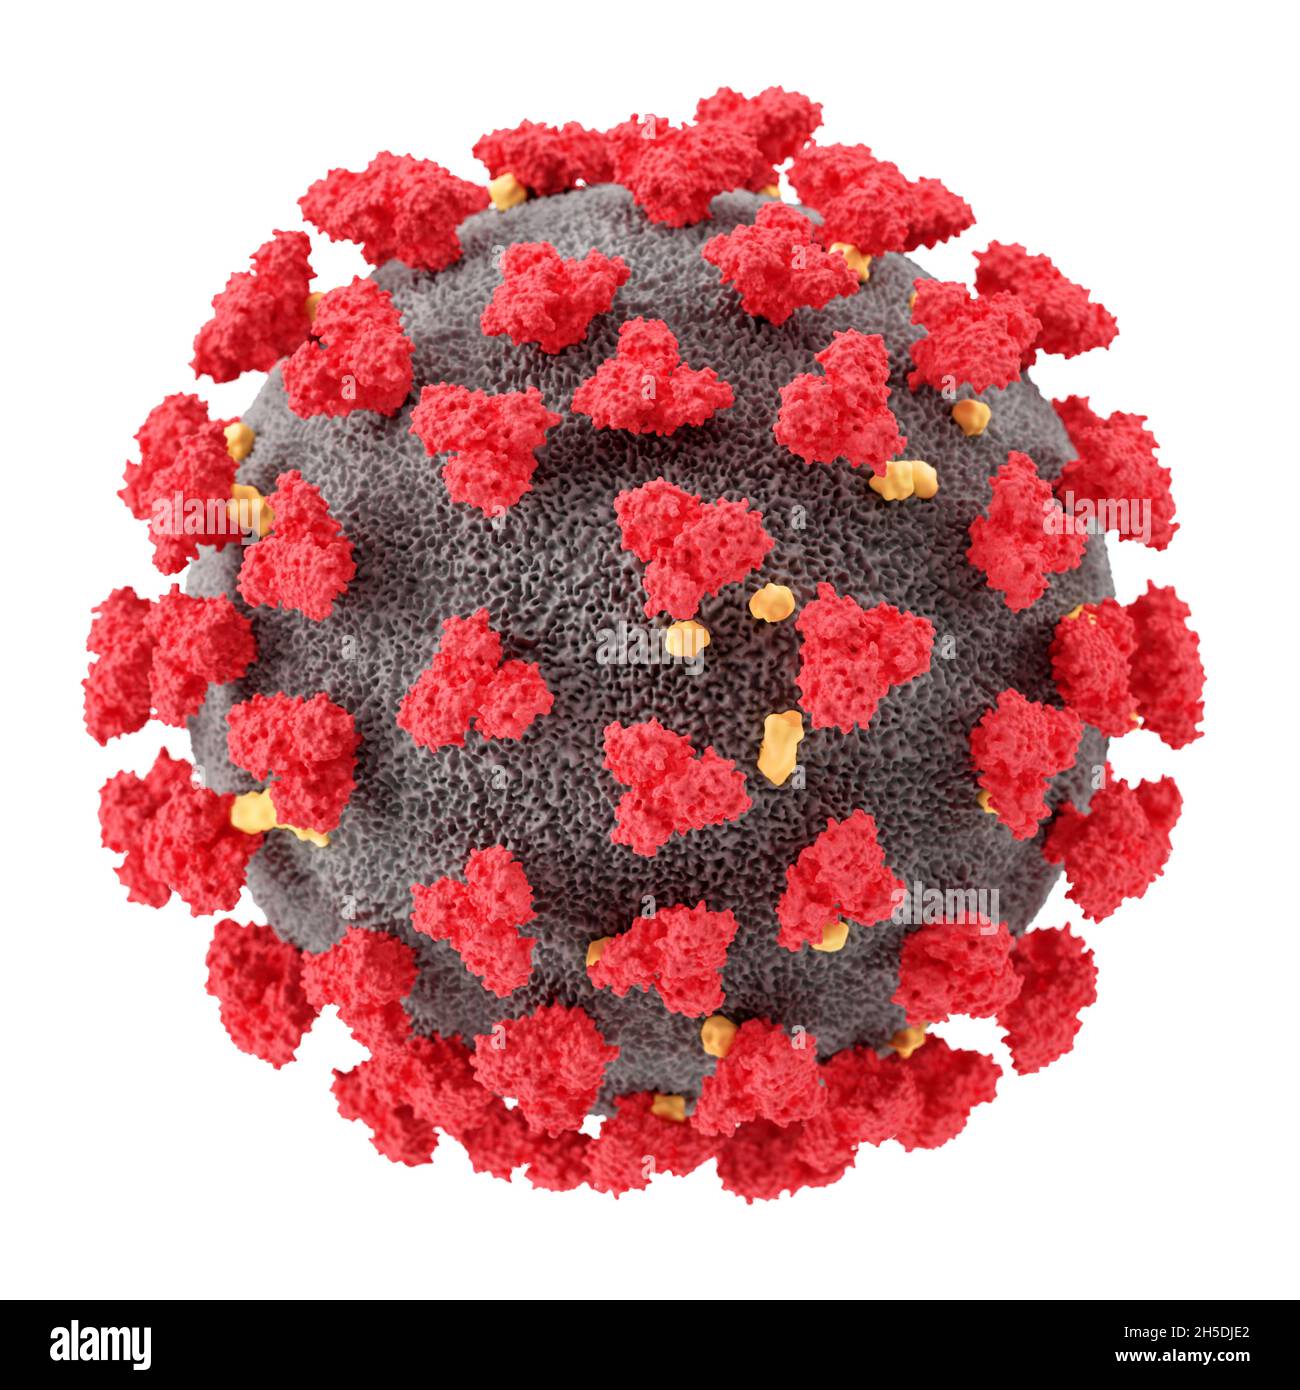 Visualizzazione del virus SARS-COV-2 (COVID19). Illustrazione del patogeno del coronavirus al microscopio. Isolato su sfondo bianco. rendering 3d Foto Stock